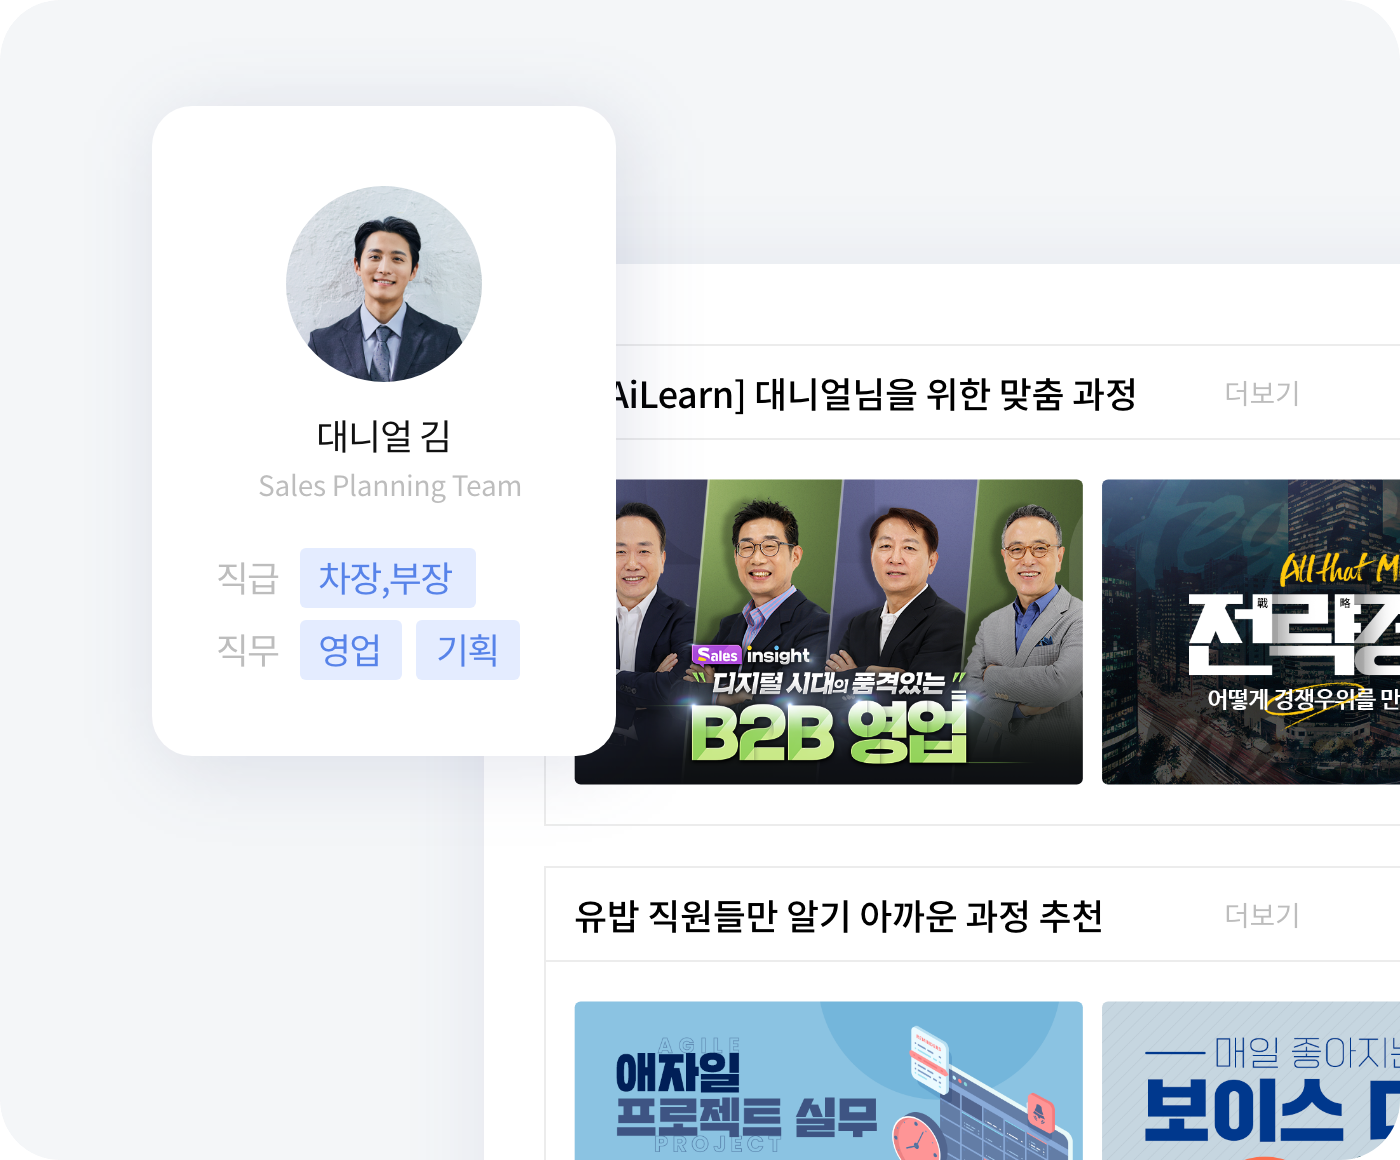 유밥 AiLearn, 산업·분야별 콘텐츠 큐레이션